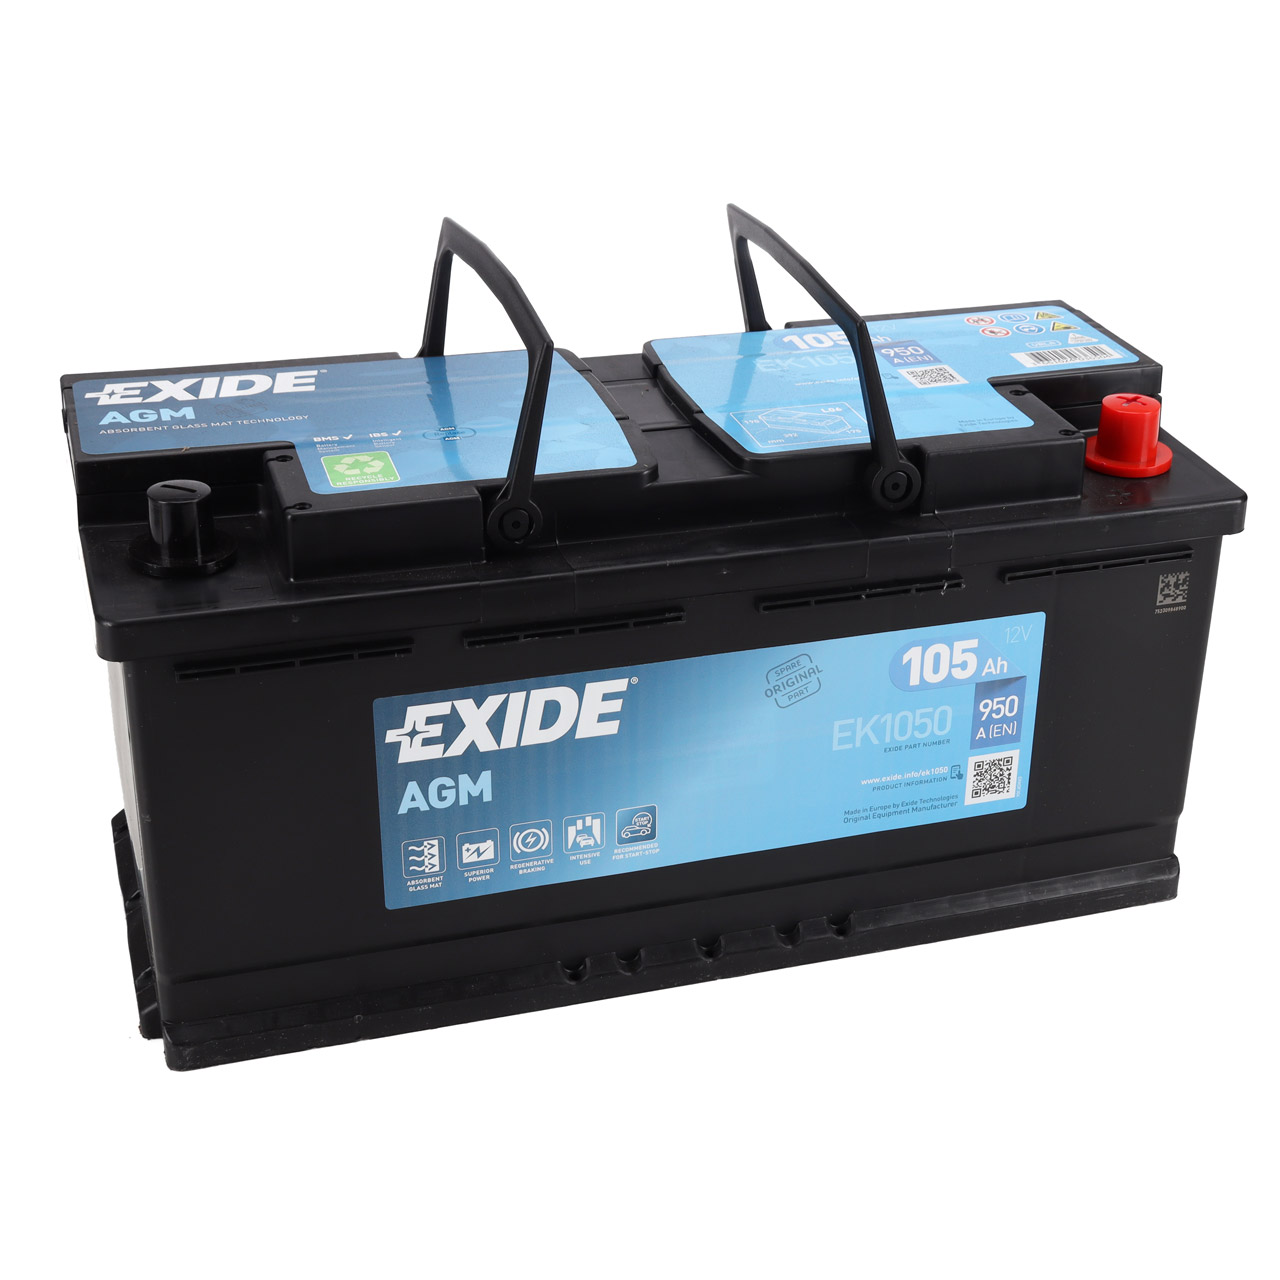 EXIDE EK1050 AGM START-STOP Autobatterie Batterie Starterbatterie 12V 105Ah EN950A